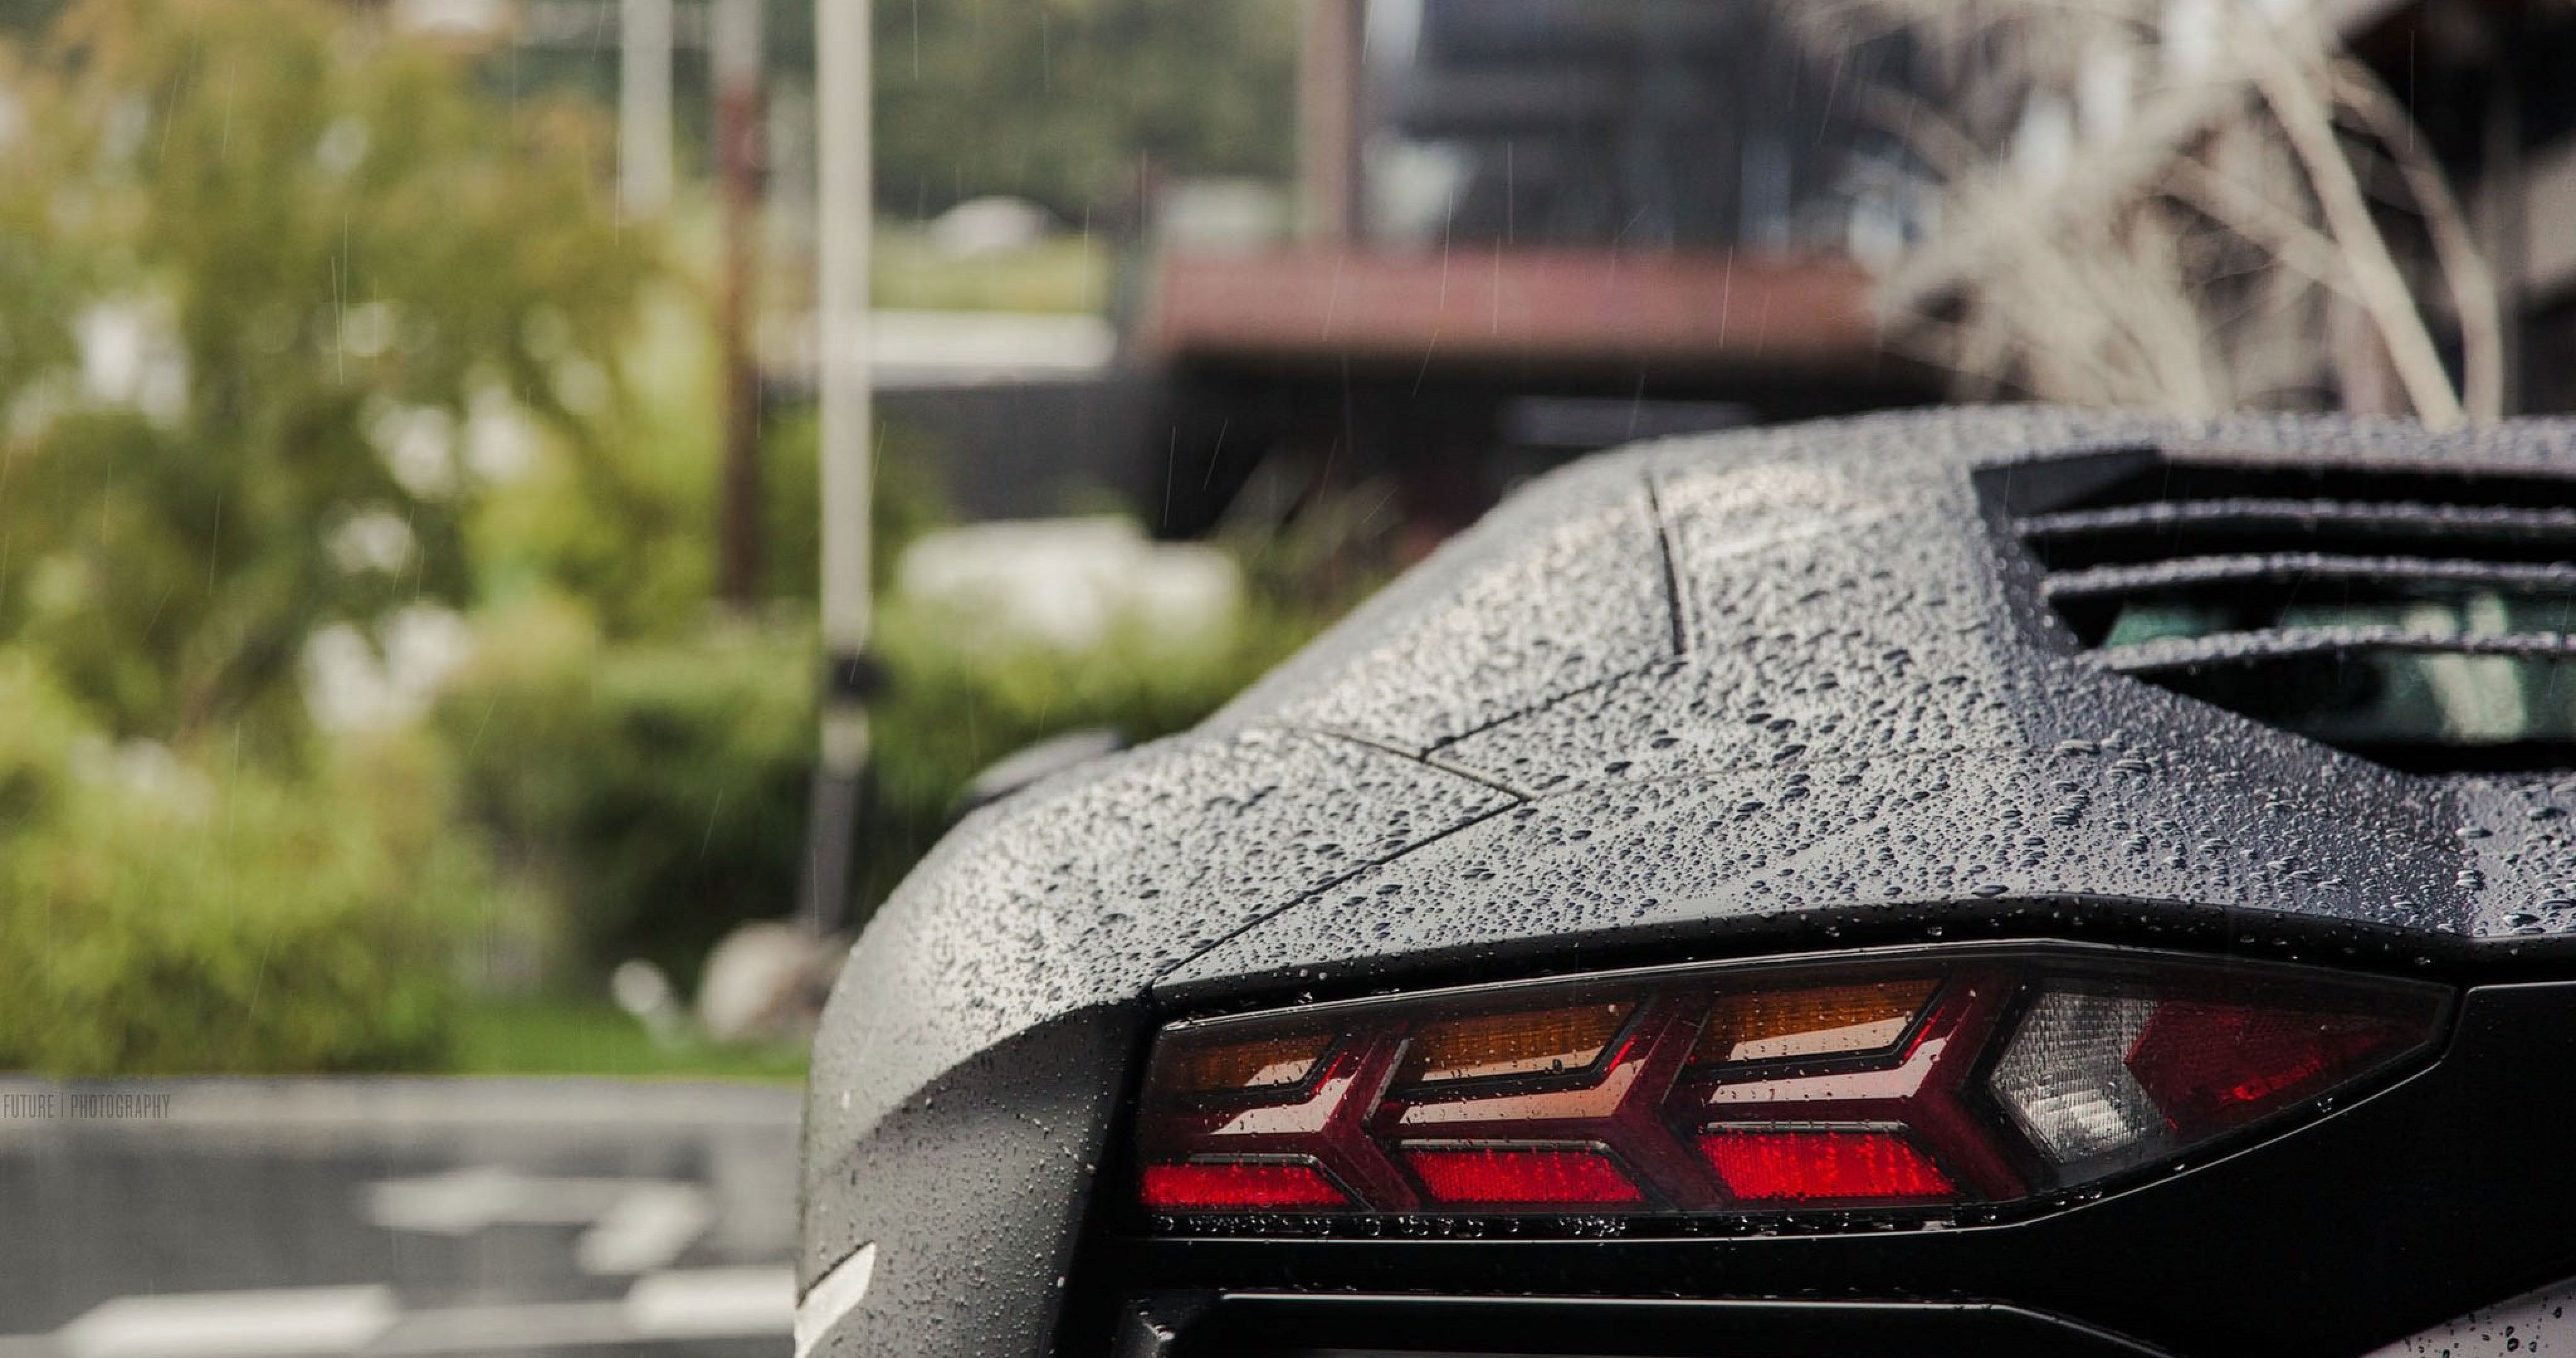 Lamborghini In Rain 4k Ultra HD Wallpaper